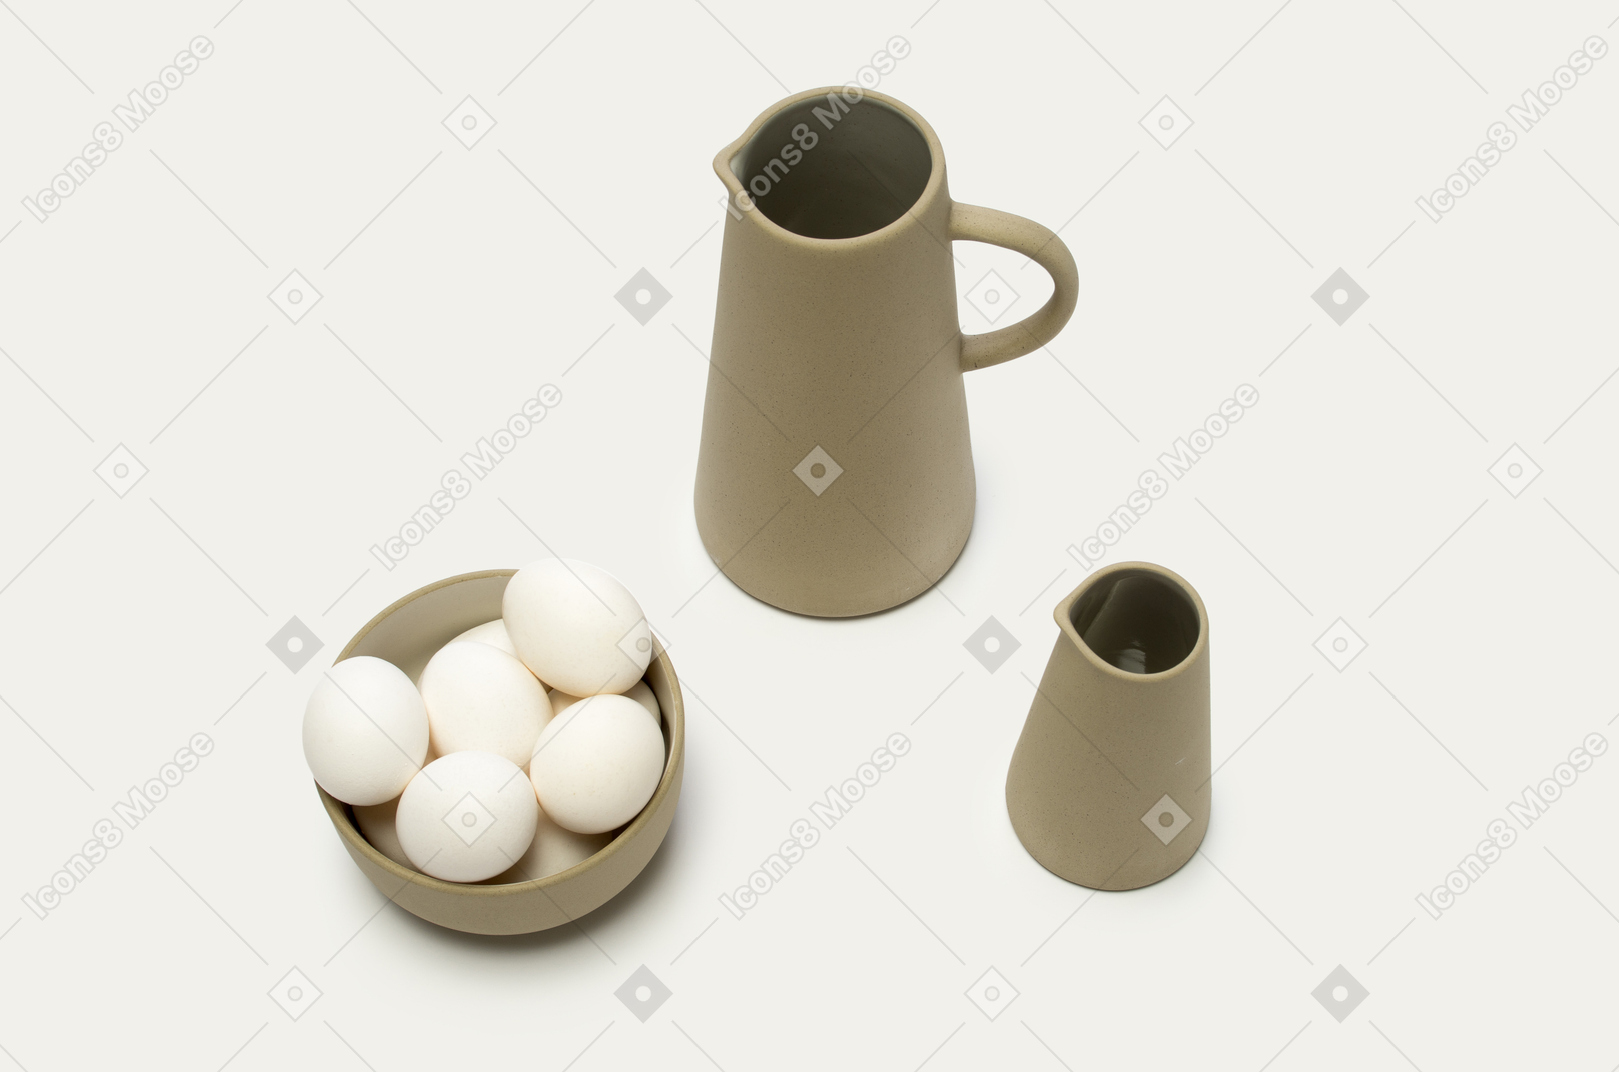 Eine schüssel eier und einige gläser auf einem weißen hintergrund